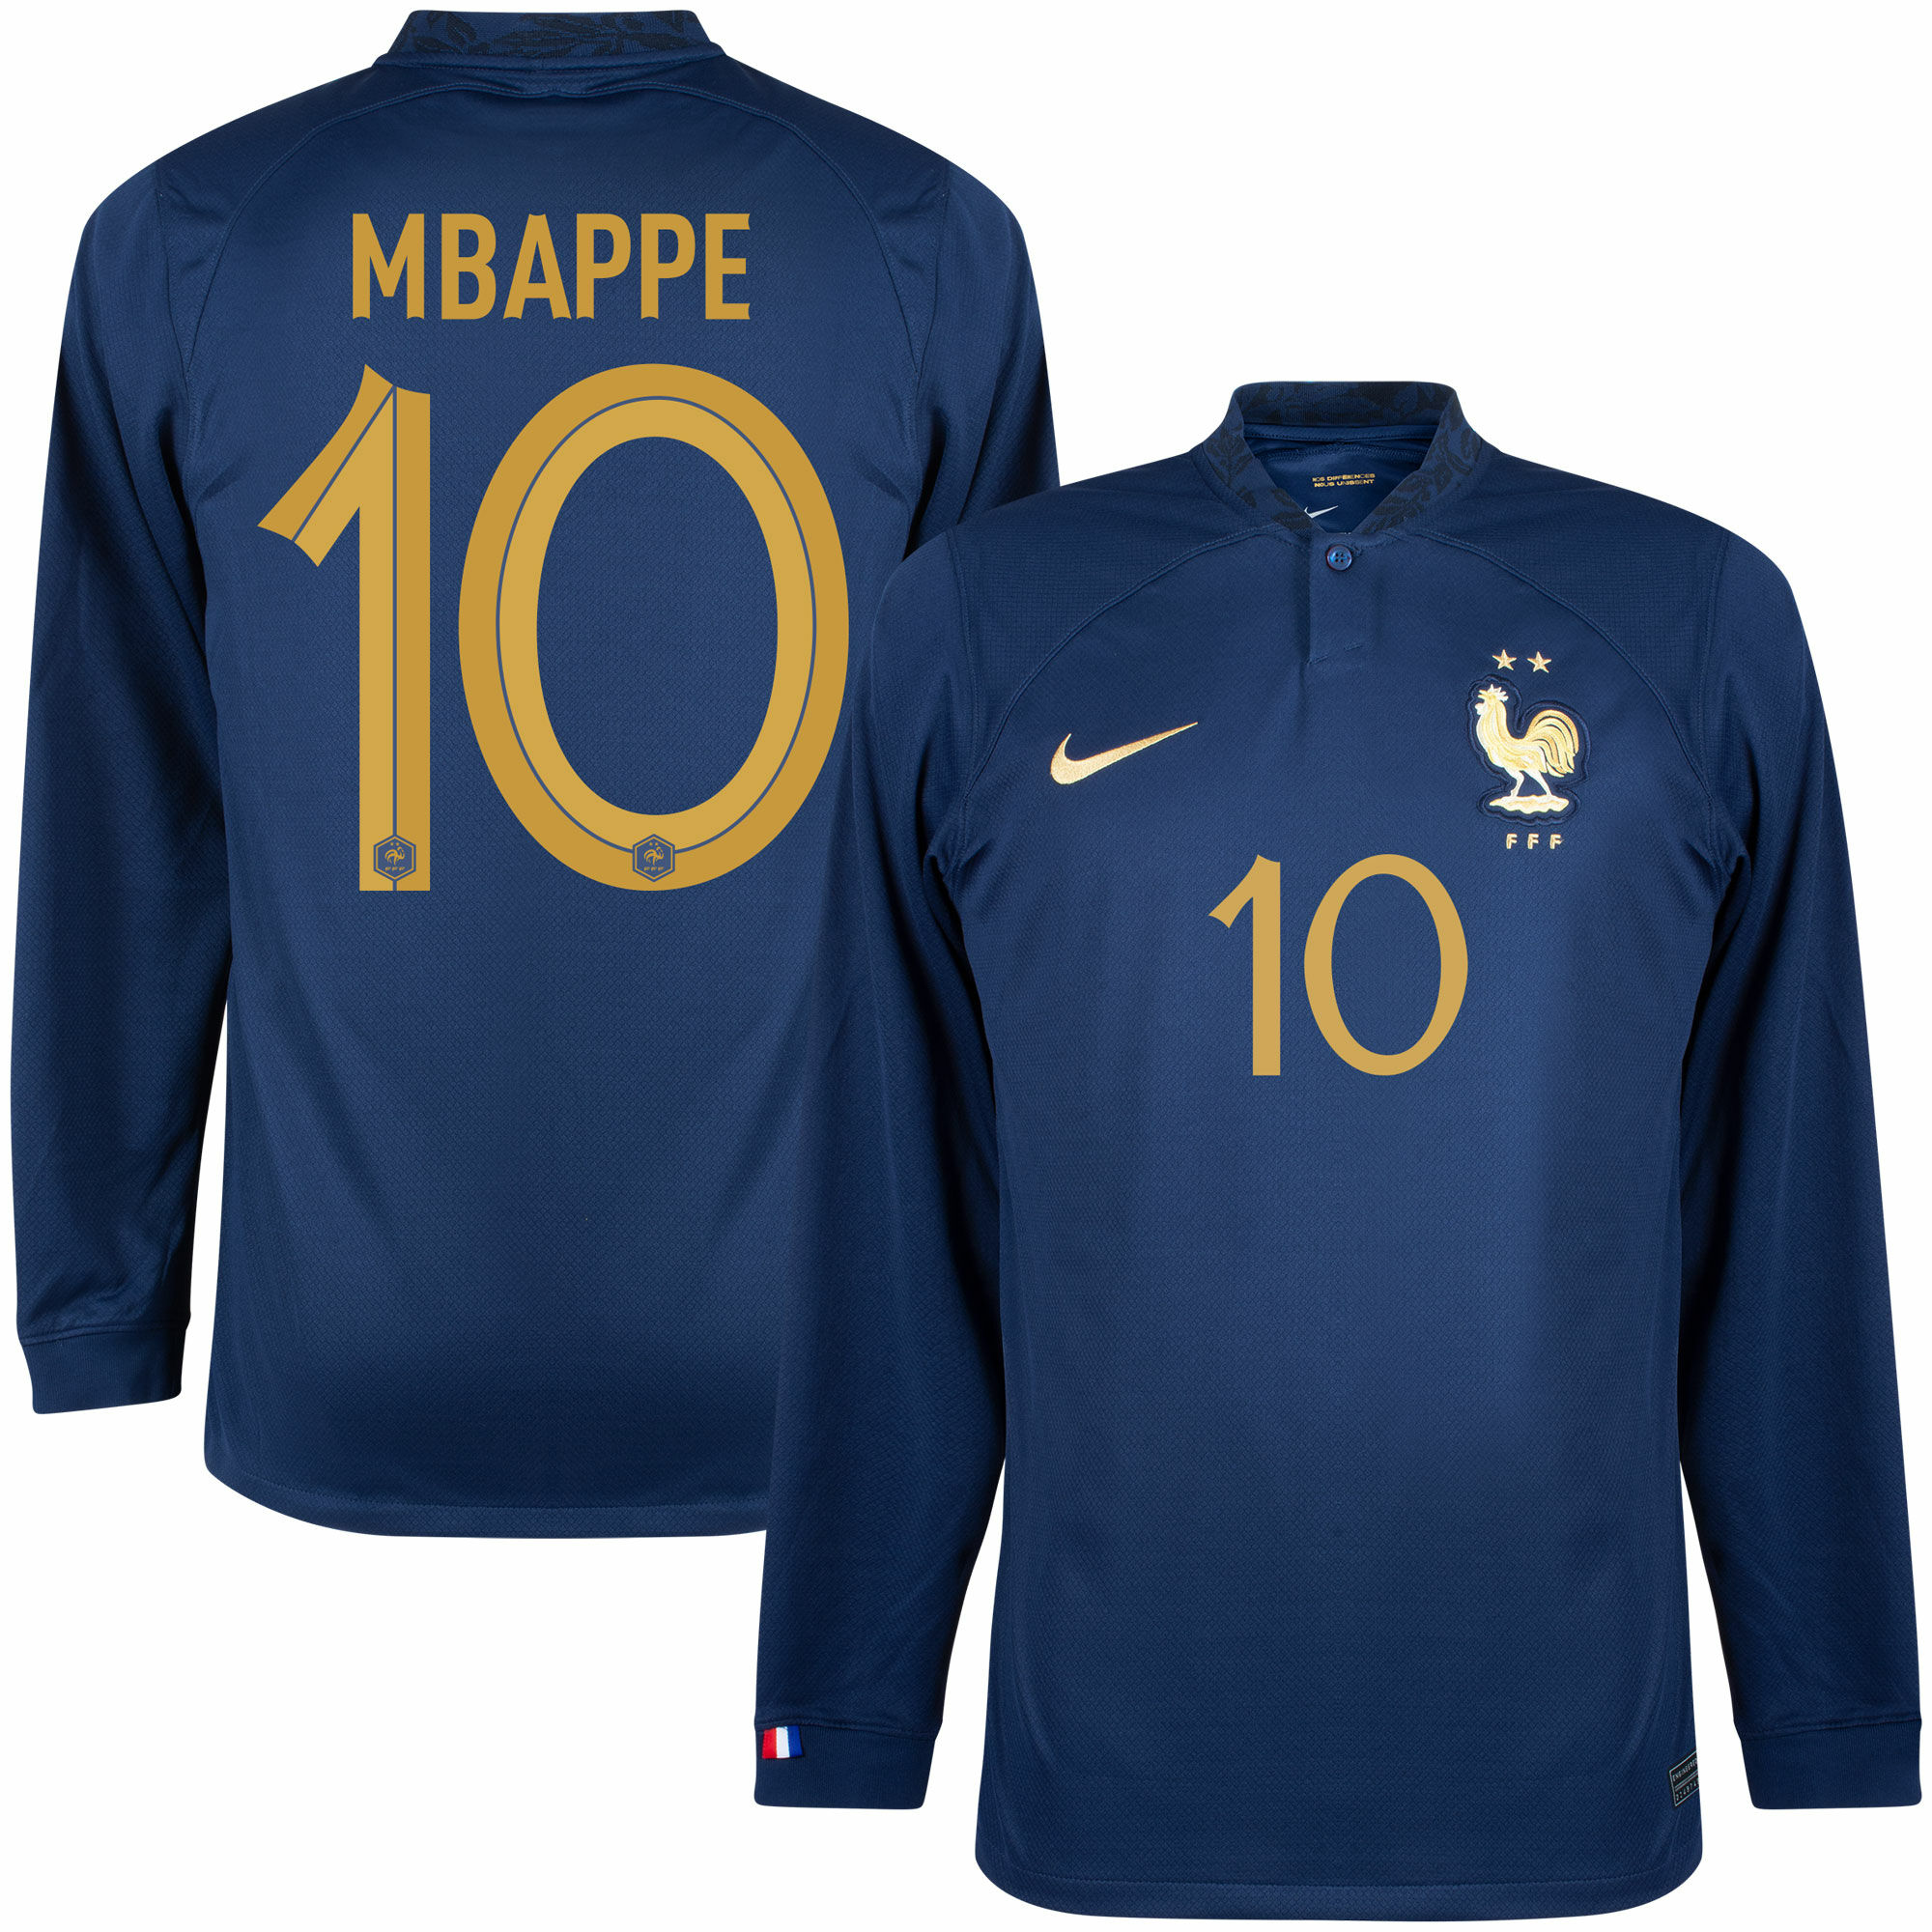 Francie - Dres fotbalový - oficiální potisk, Kylian Mbappé, dlouhý rukáv, číslo 10, domácí, sezóna 2022/23, modrý